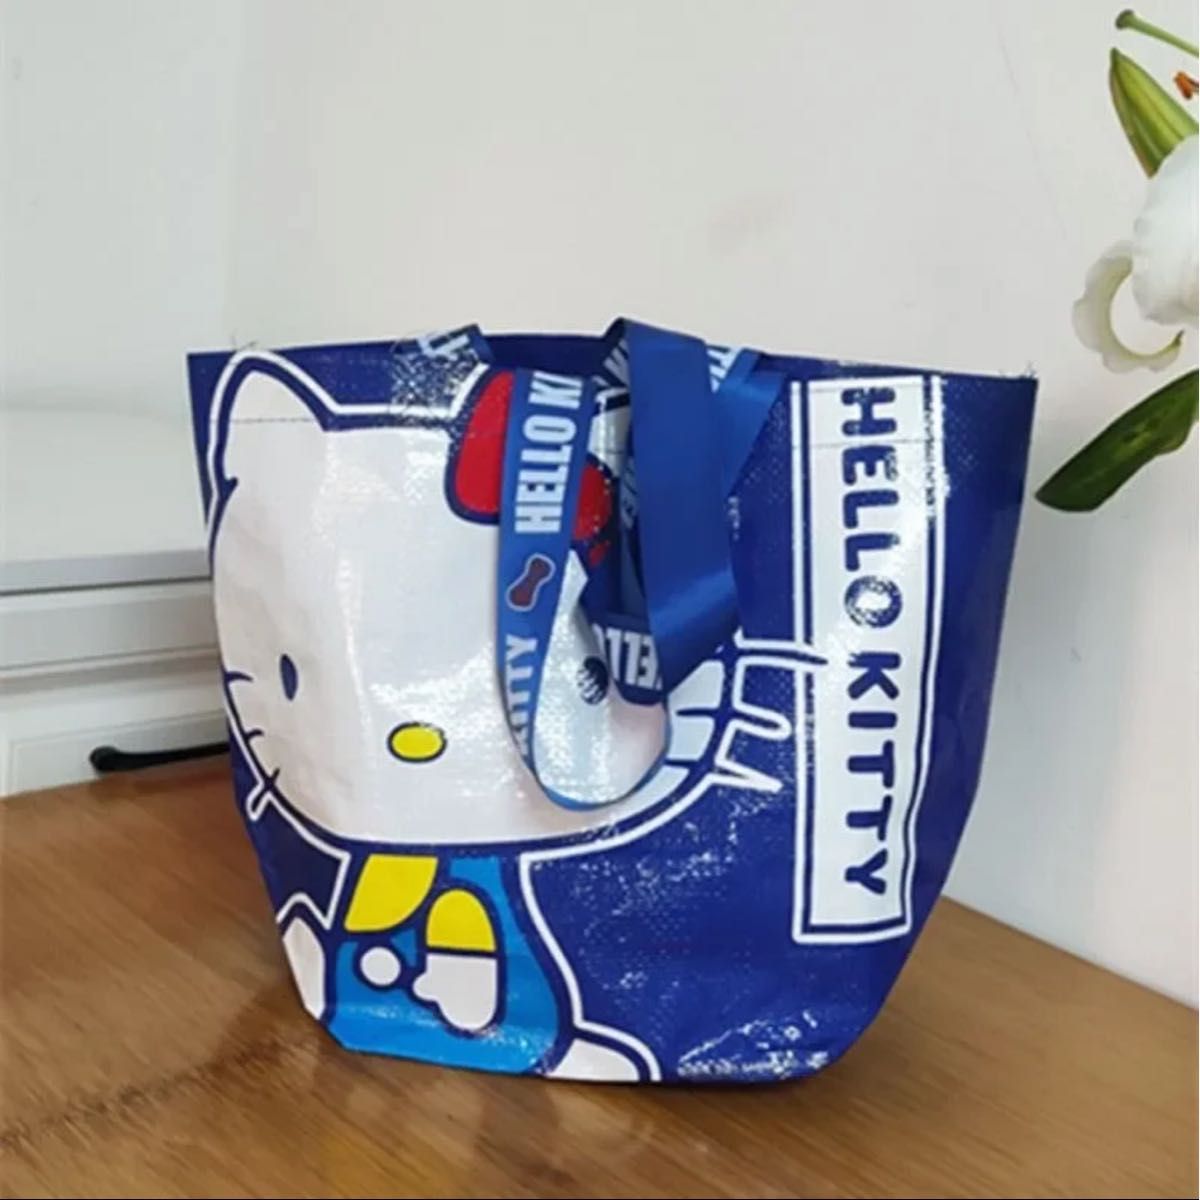 トートバッグ エコバッグ ハローキティ サンリオキャラクター ビニールバッグ バッグ キティ 韓国限定品  非売品 sanrio